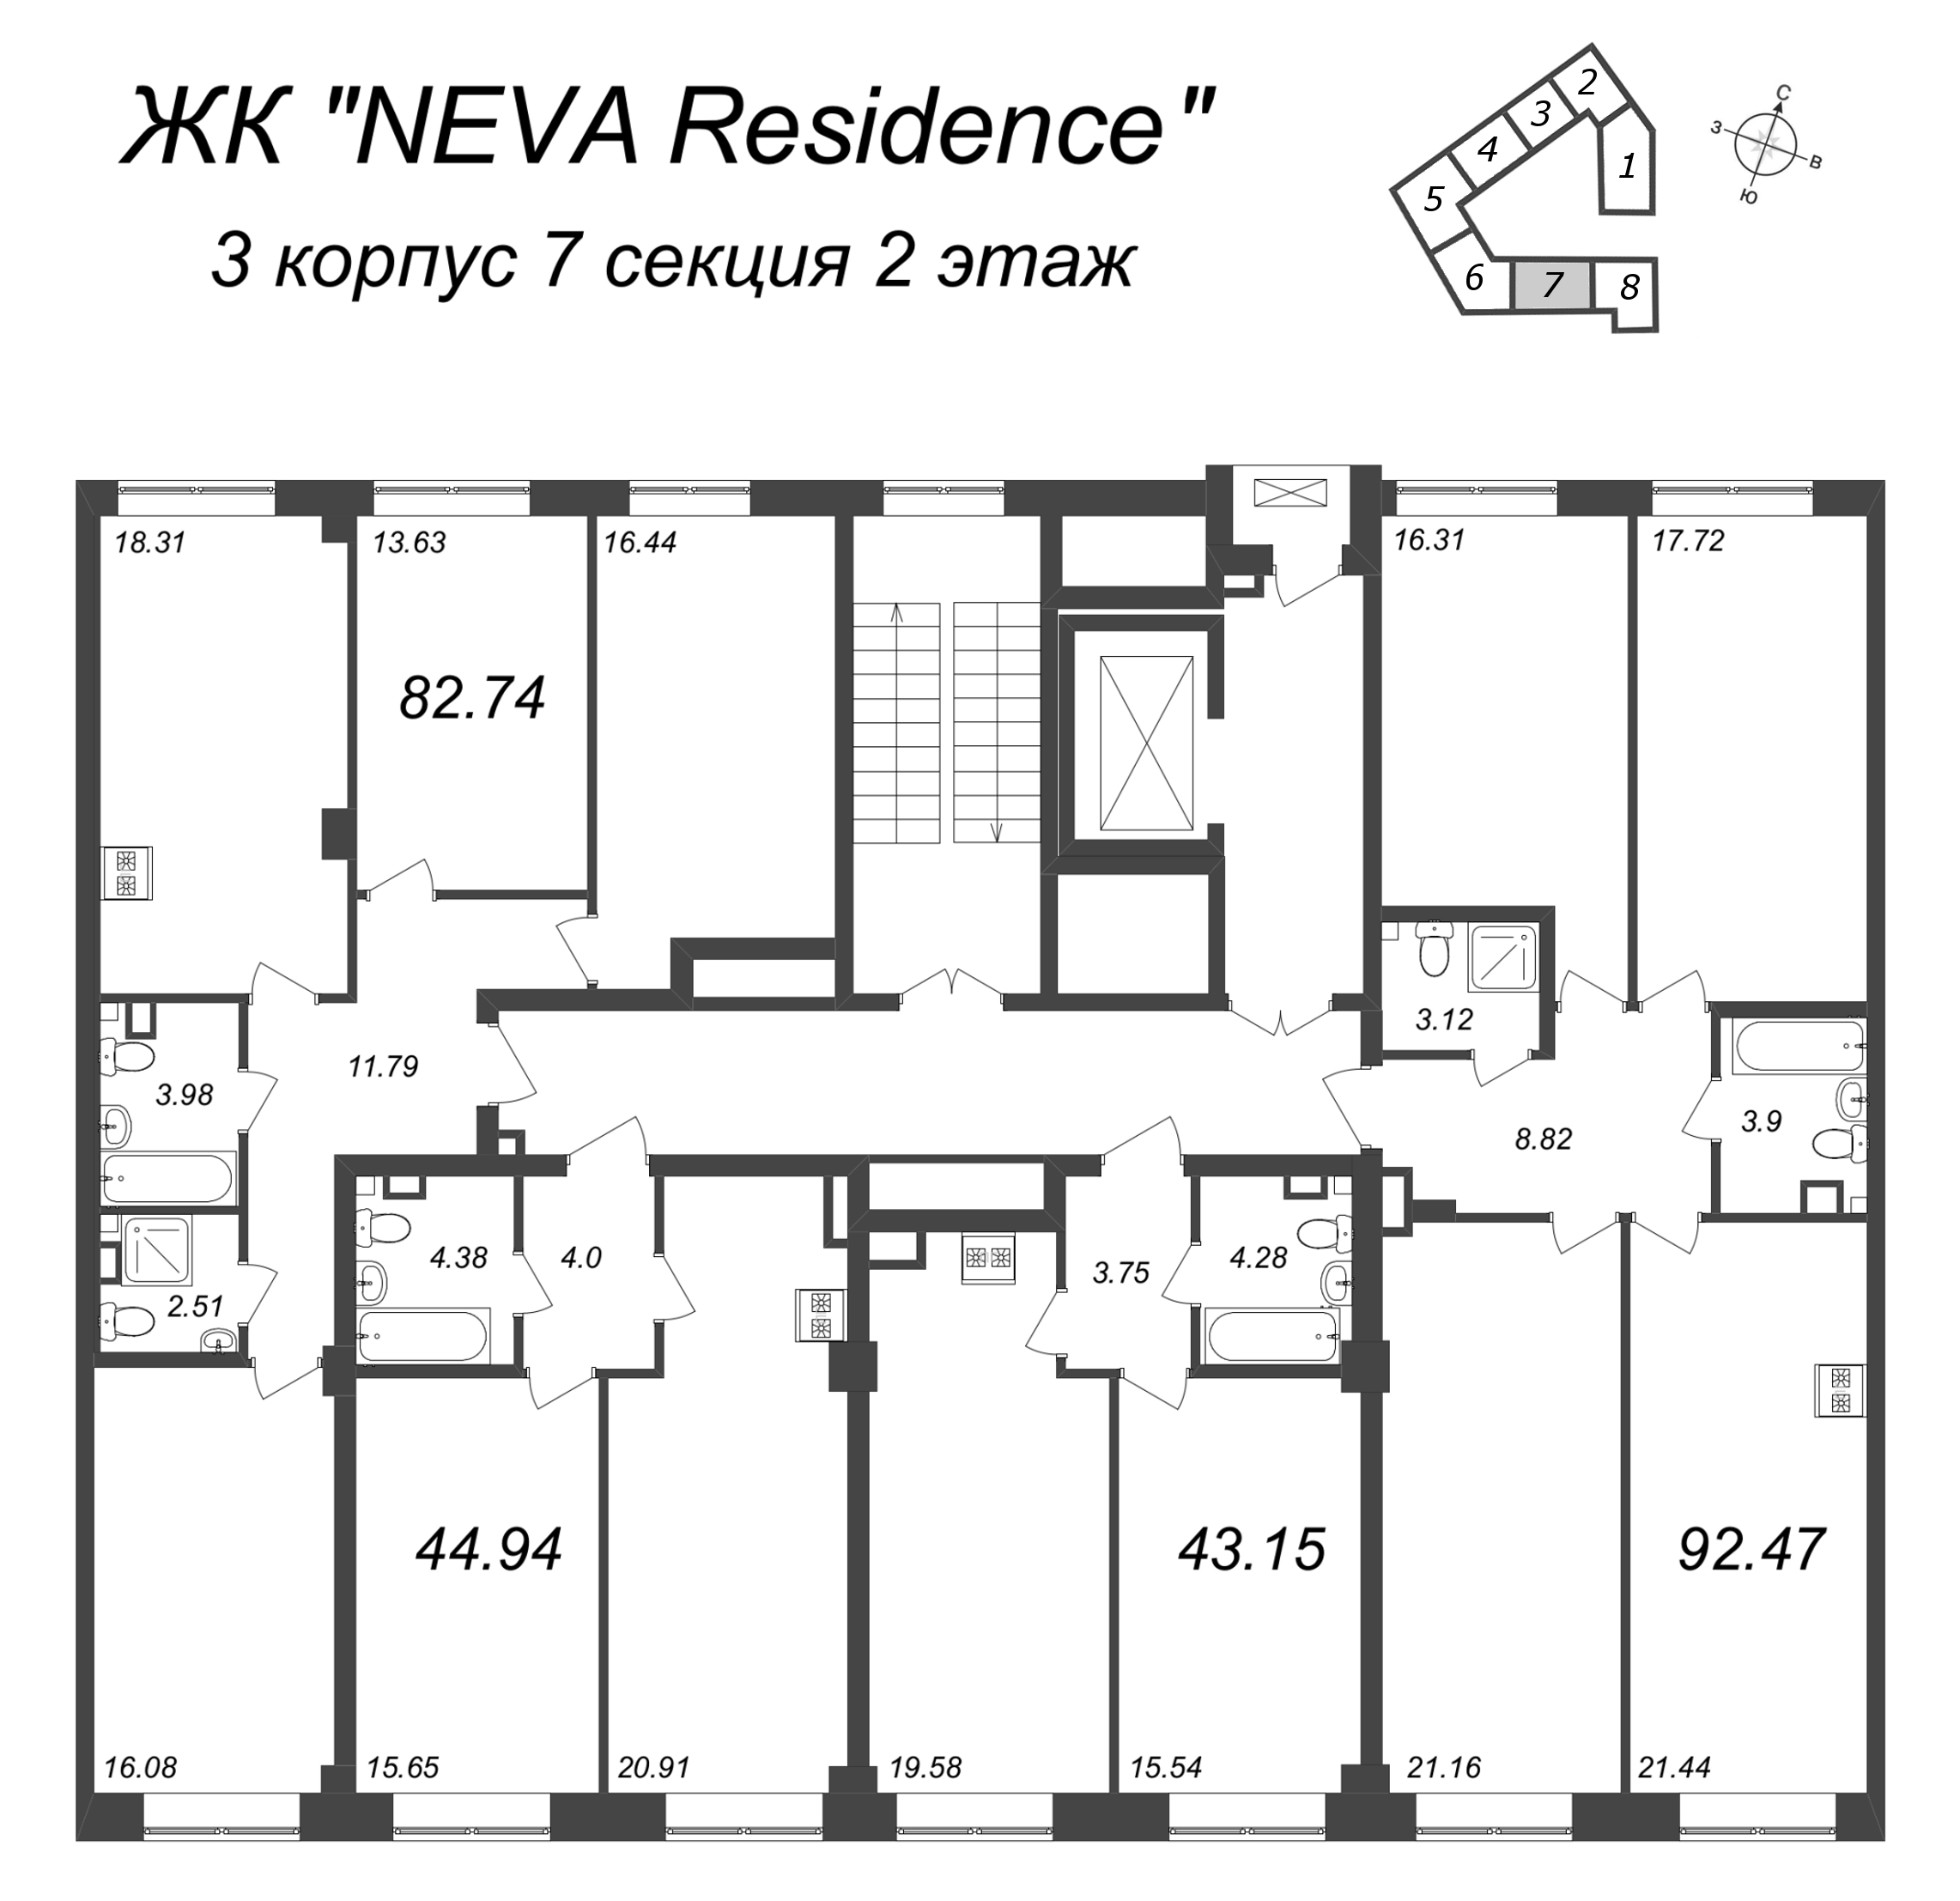 4-комнатная (Евро) квартира, 92.47 м² в ЖК "Neva Residence" - планировка этажа